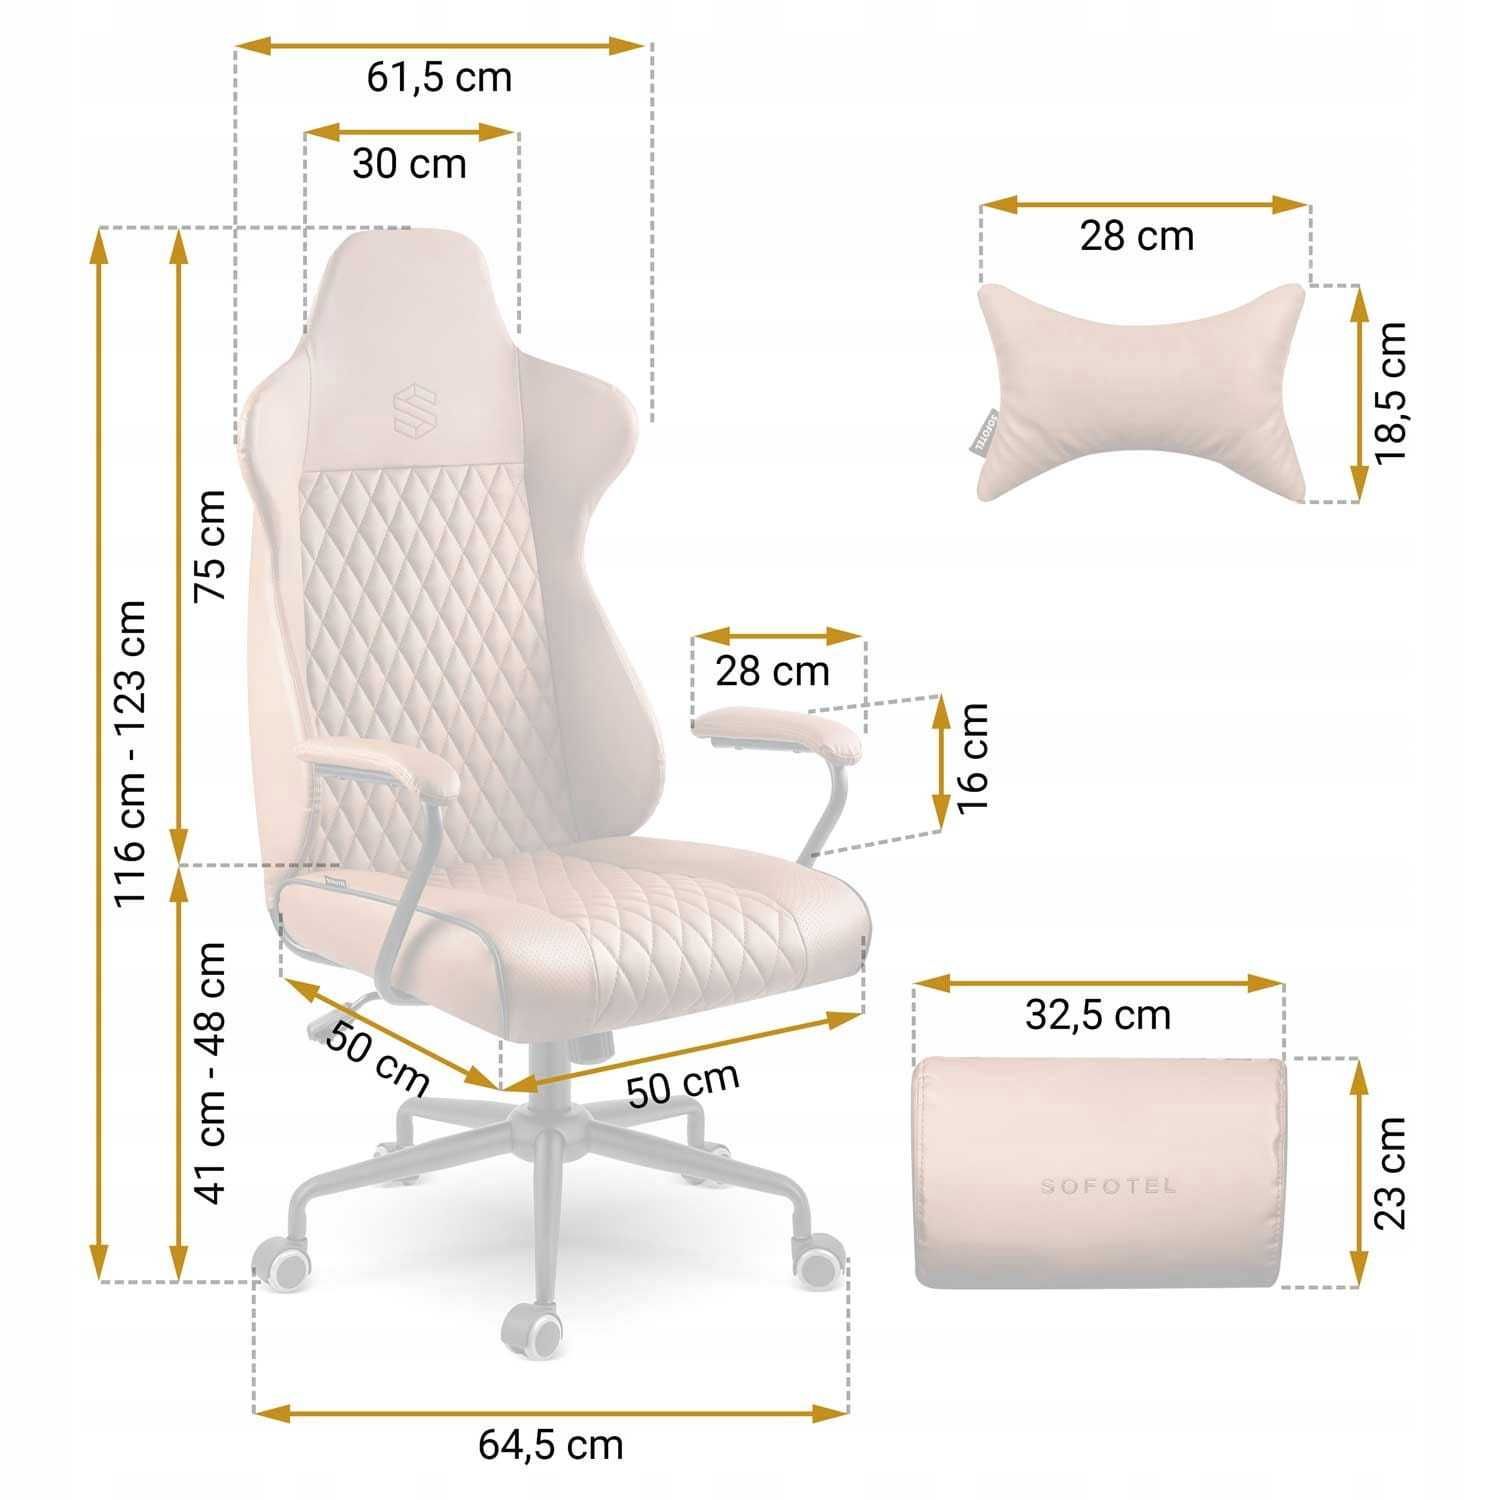 Fotel biurowy Sofotel Werona - brązowy